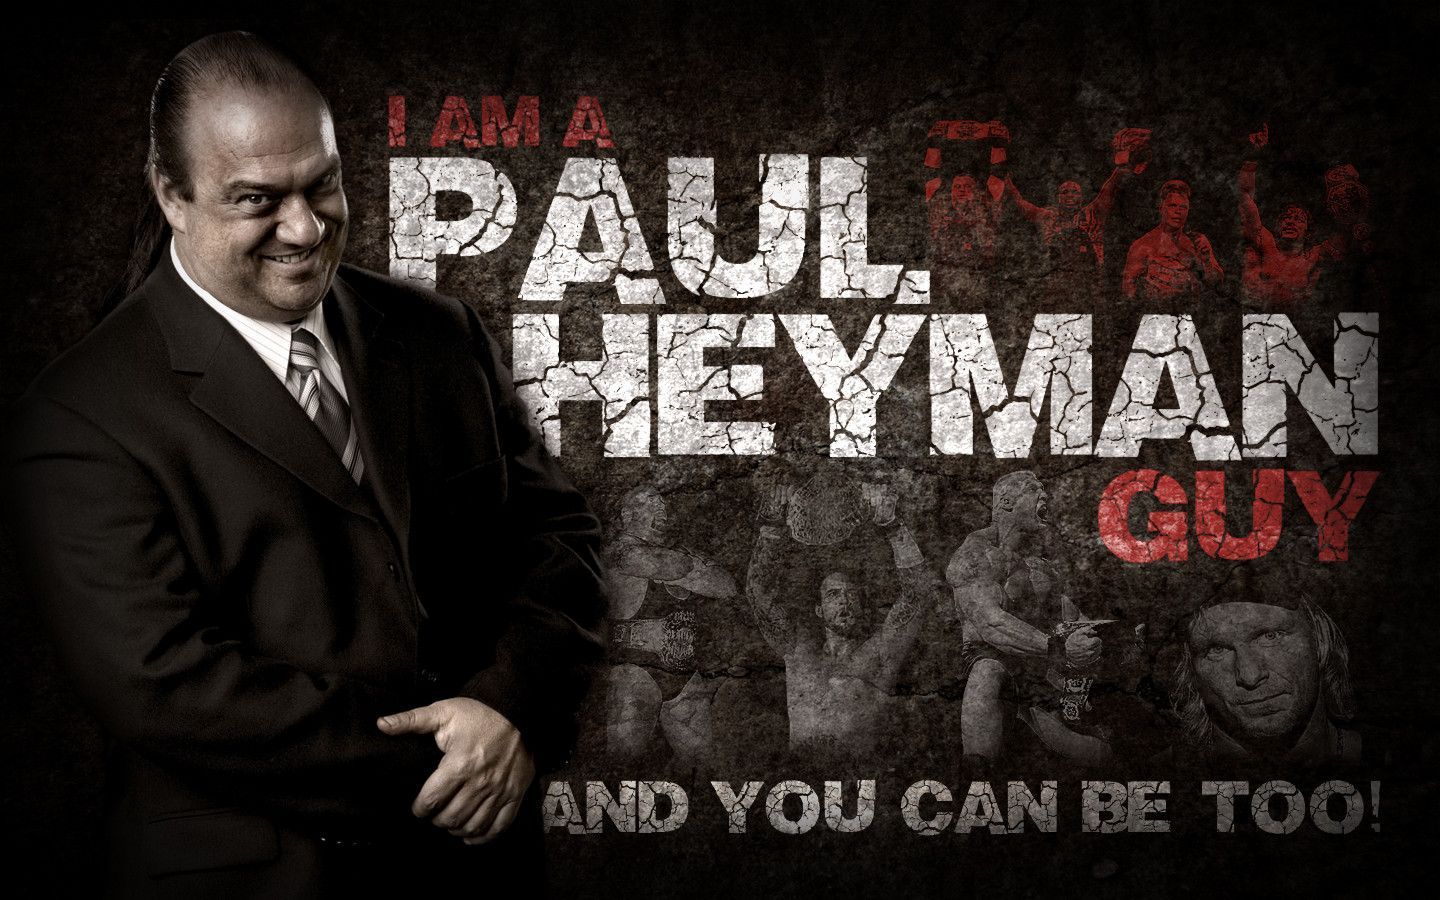 I'm A Paul Heyman Guy